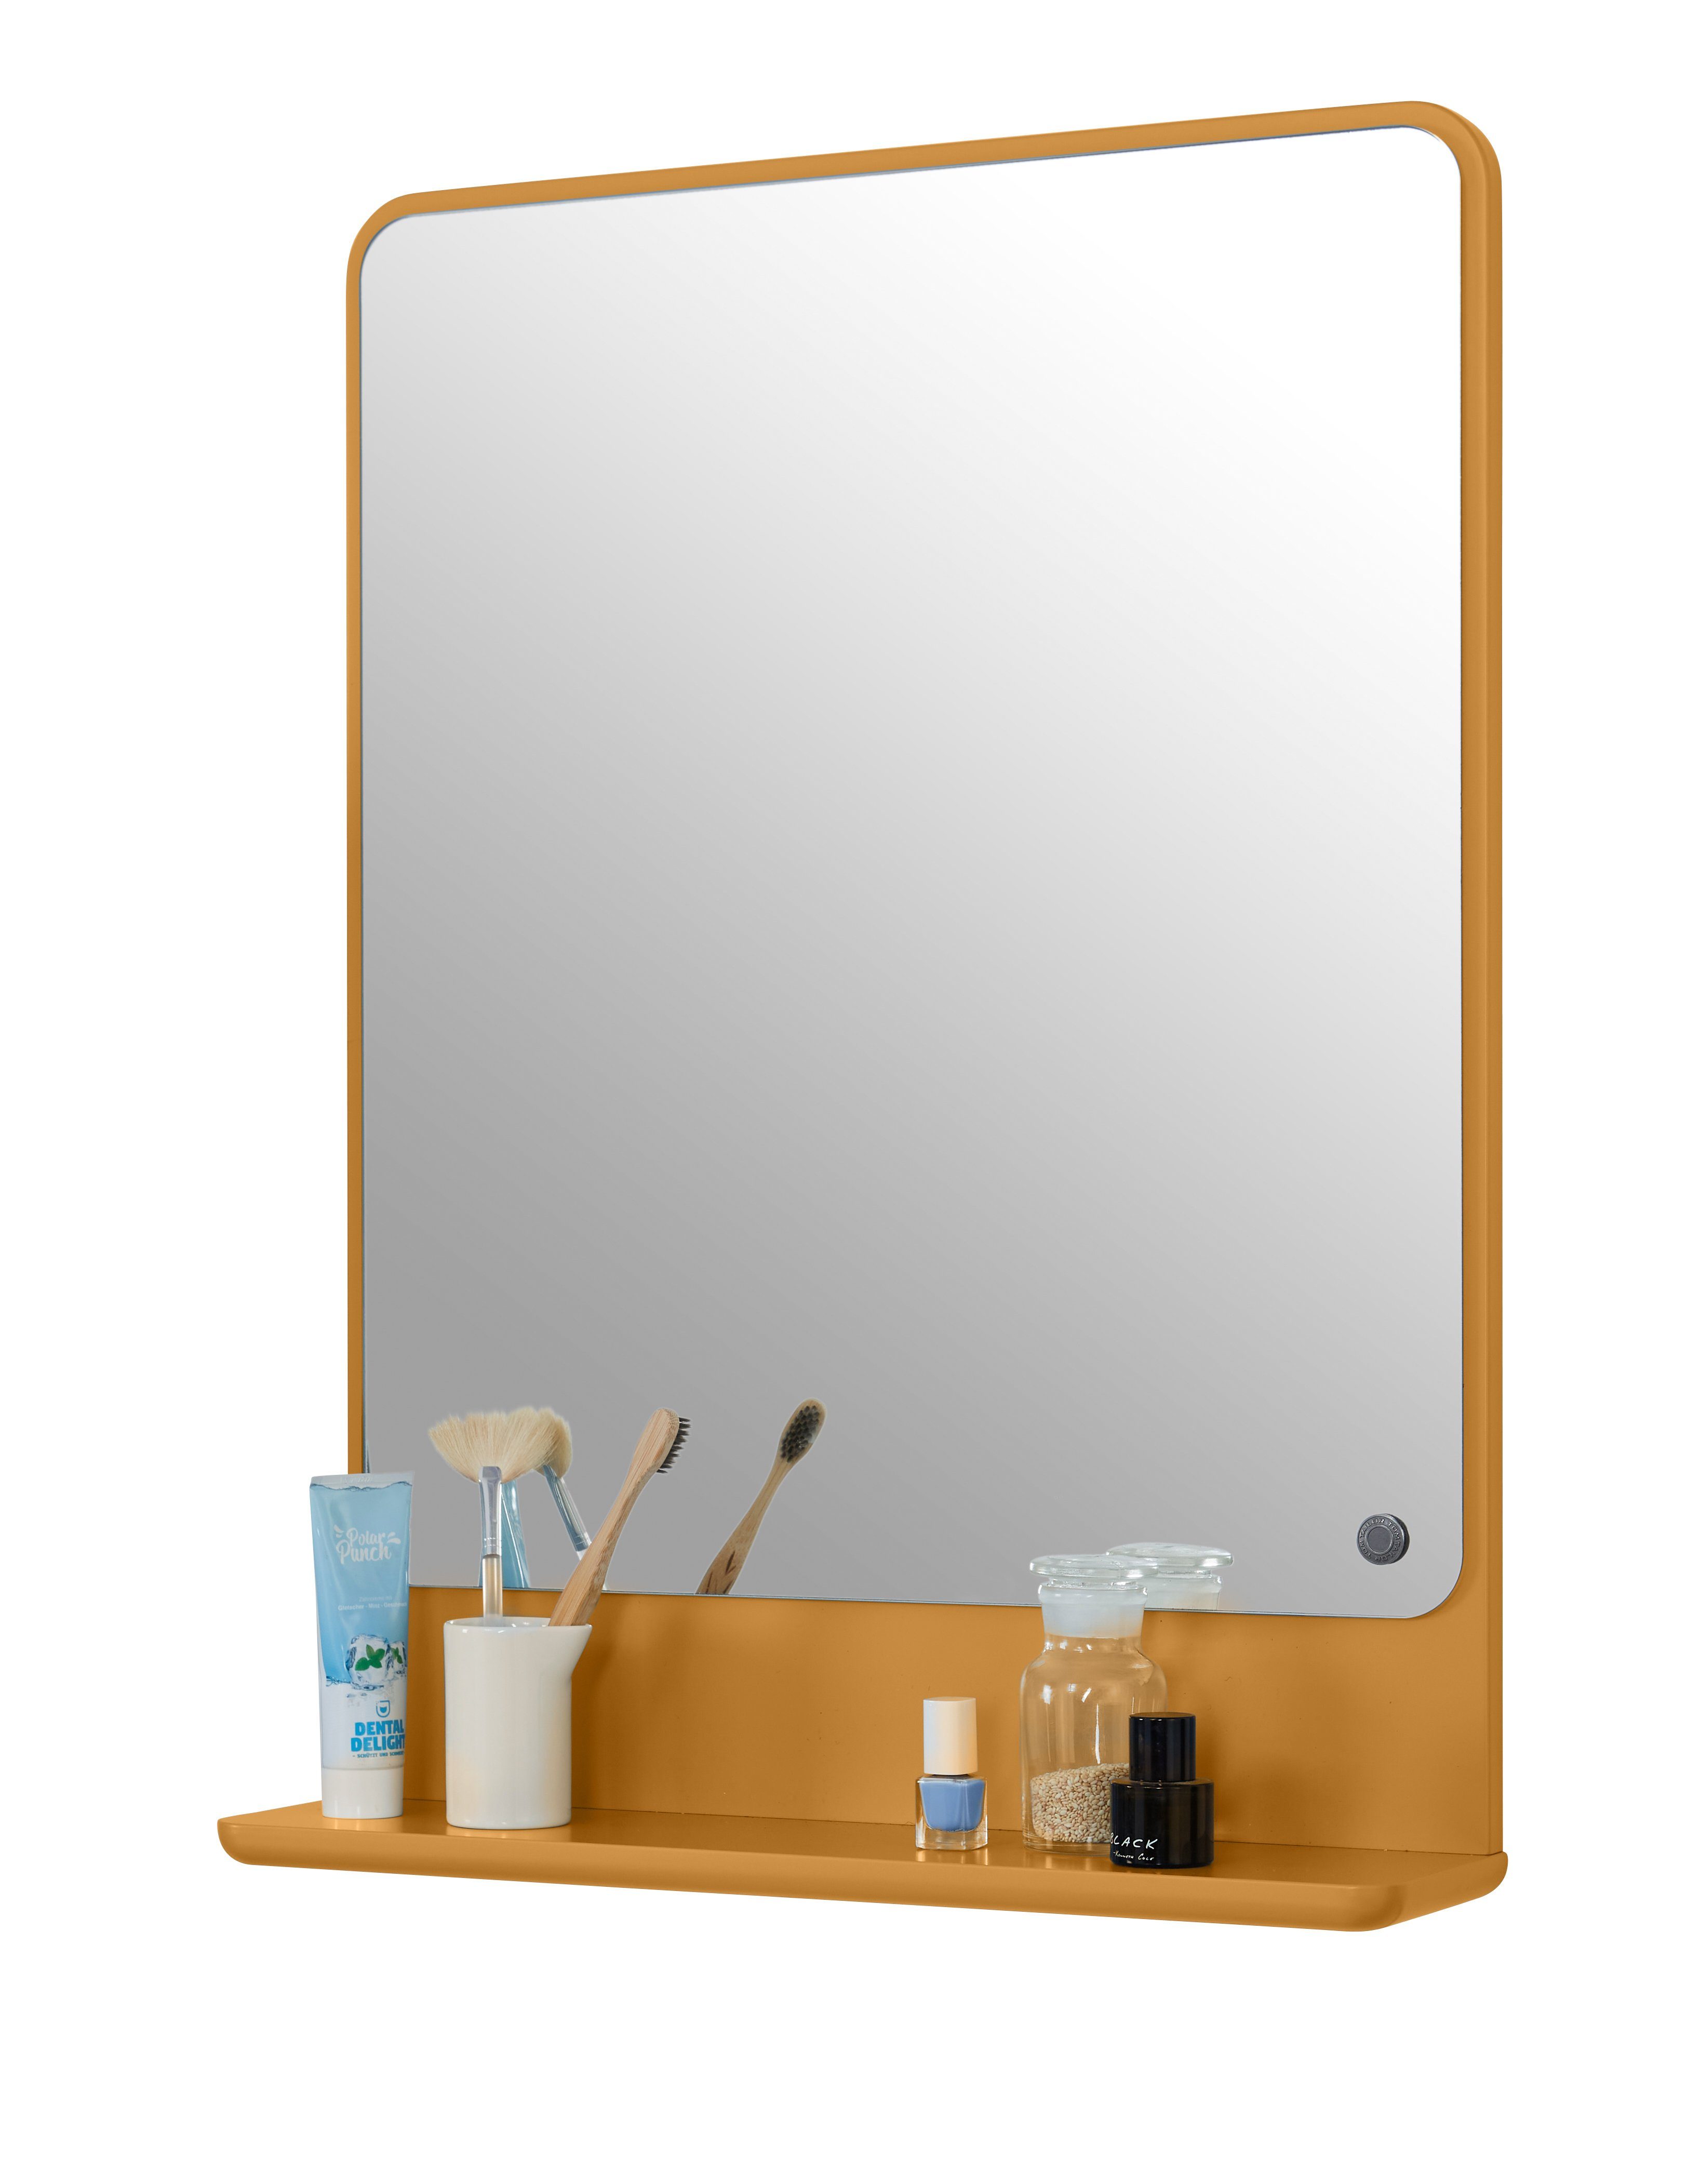 TOM TAILOR HOME Badspiegel COLOR BATH Spiegelelement - in vielen schönen Farben - 70 x 52 x 13 cm, hochwertig lackiertes MDF, gerundete Kanten mustard029 | Badspiegel